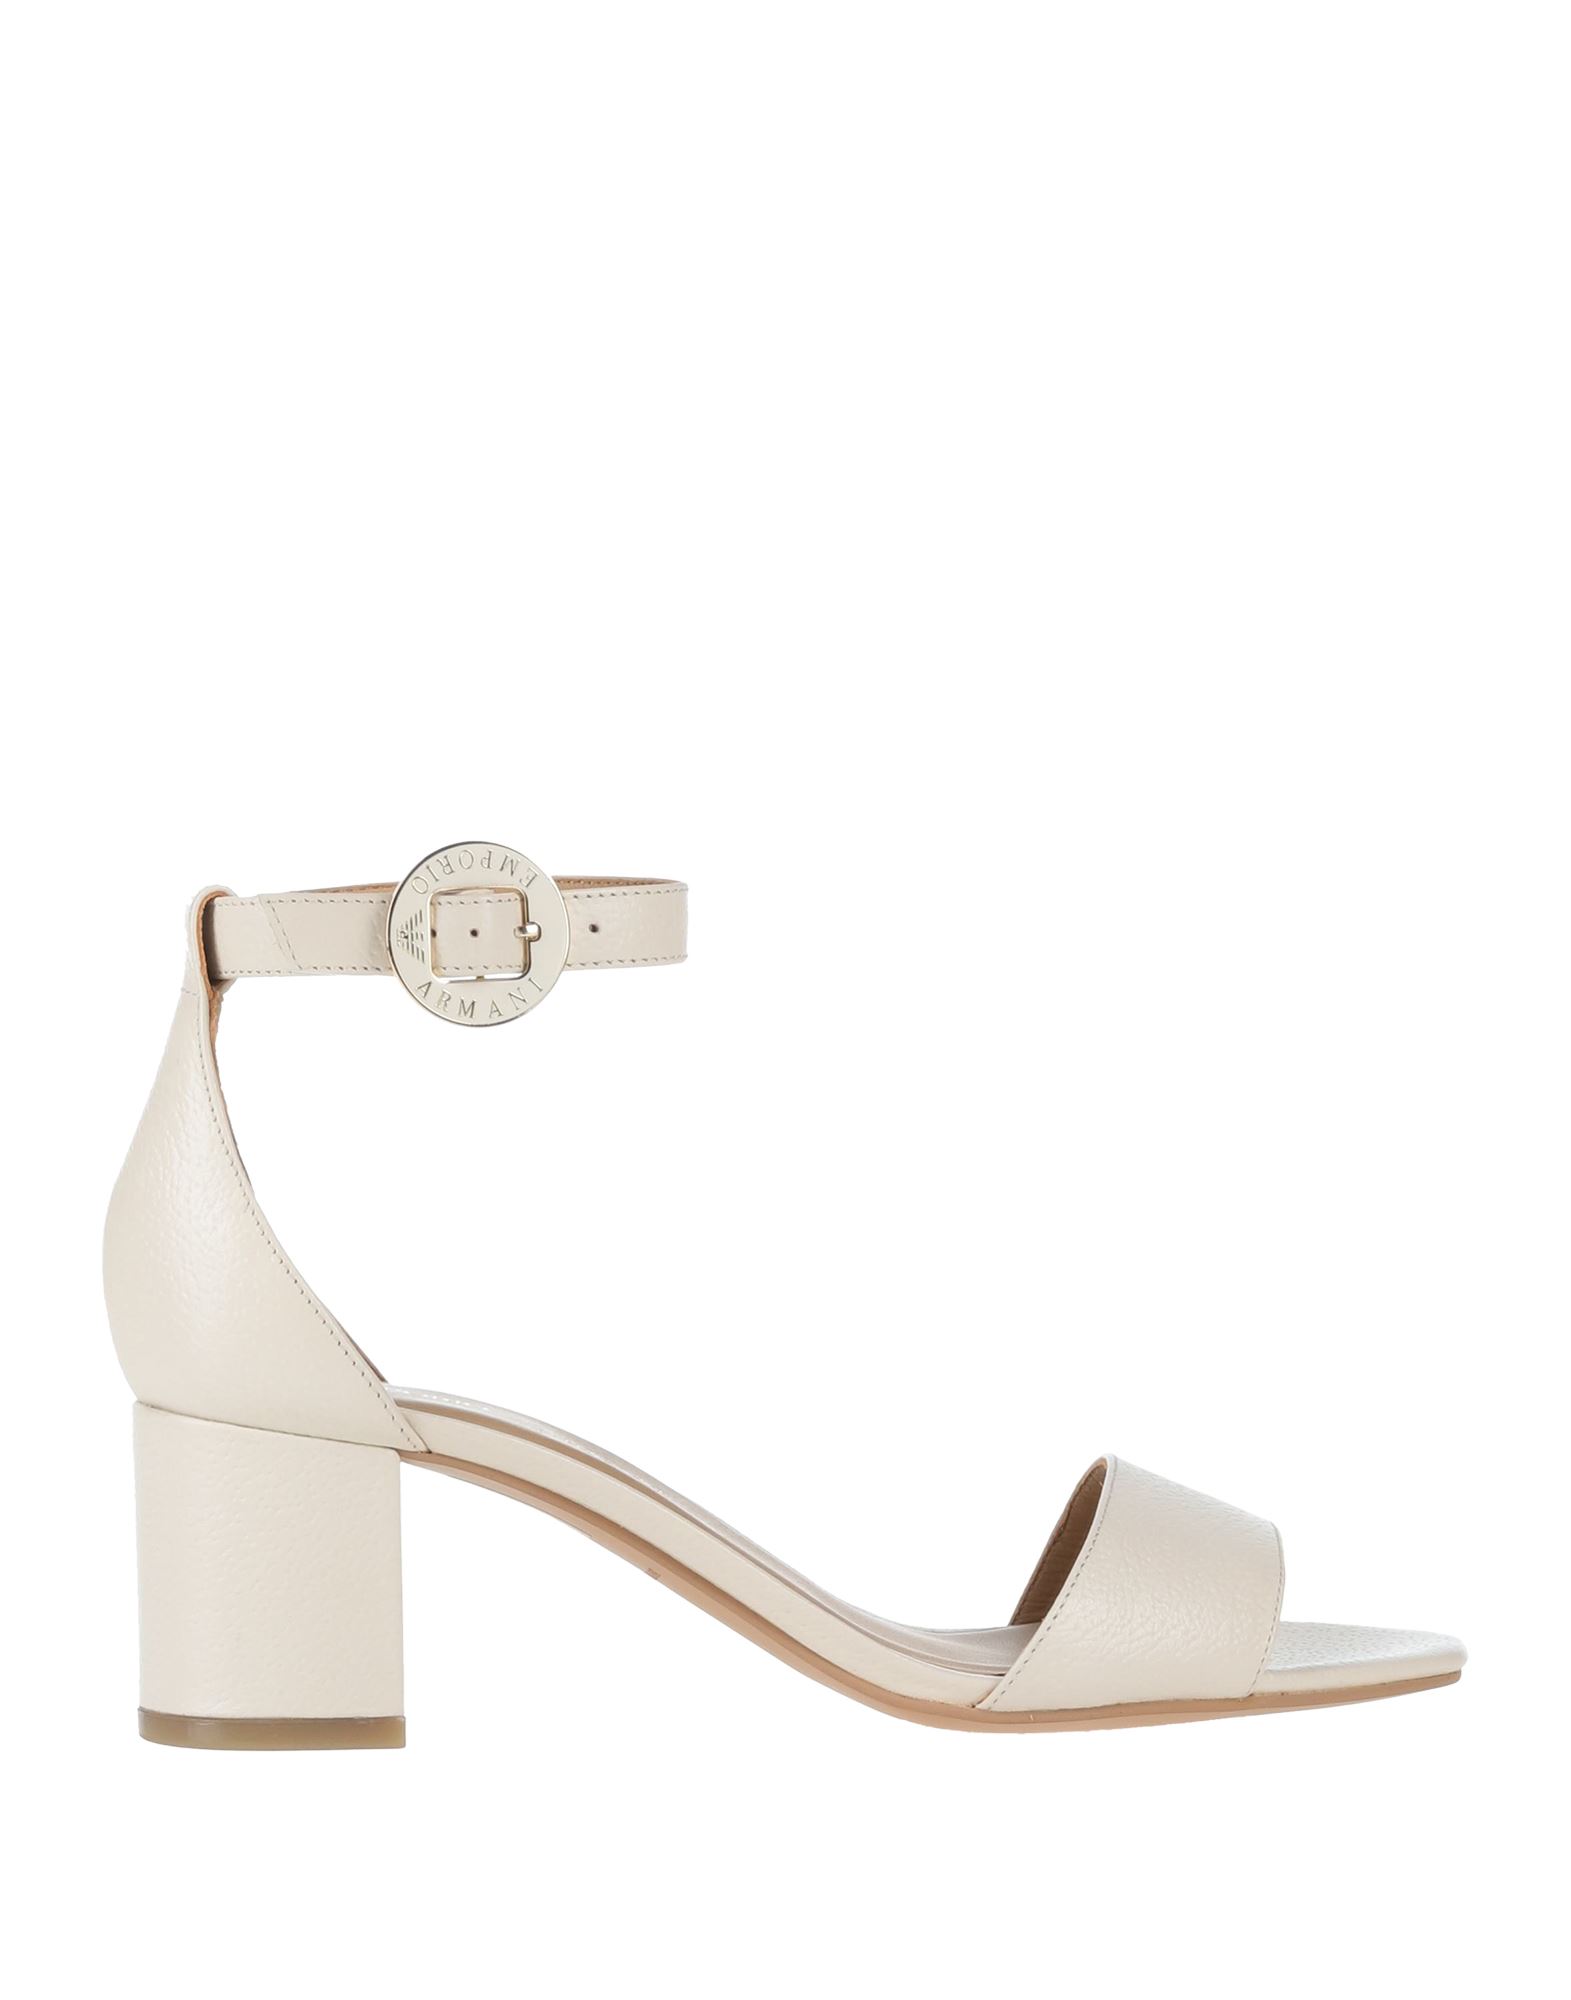 Emporio Armani Sandals In White